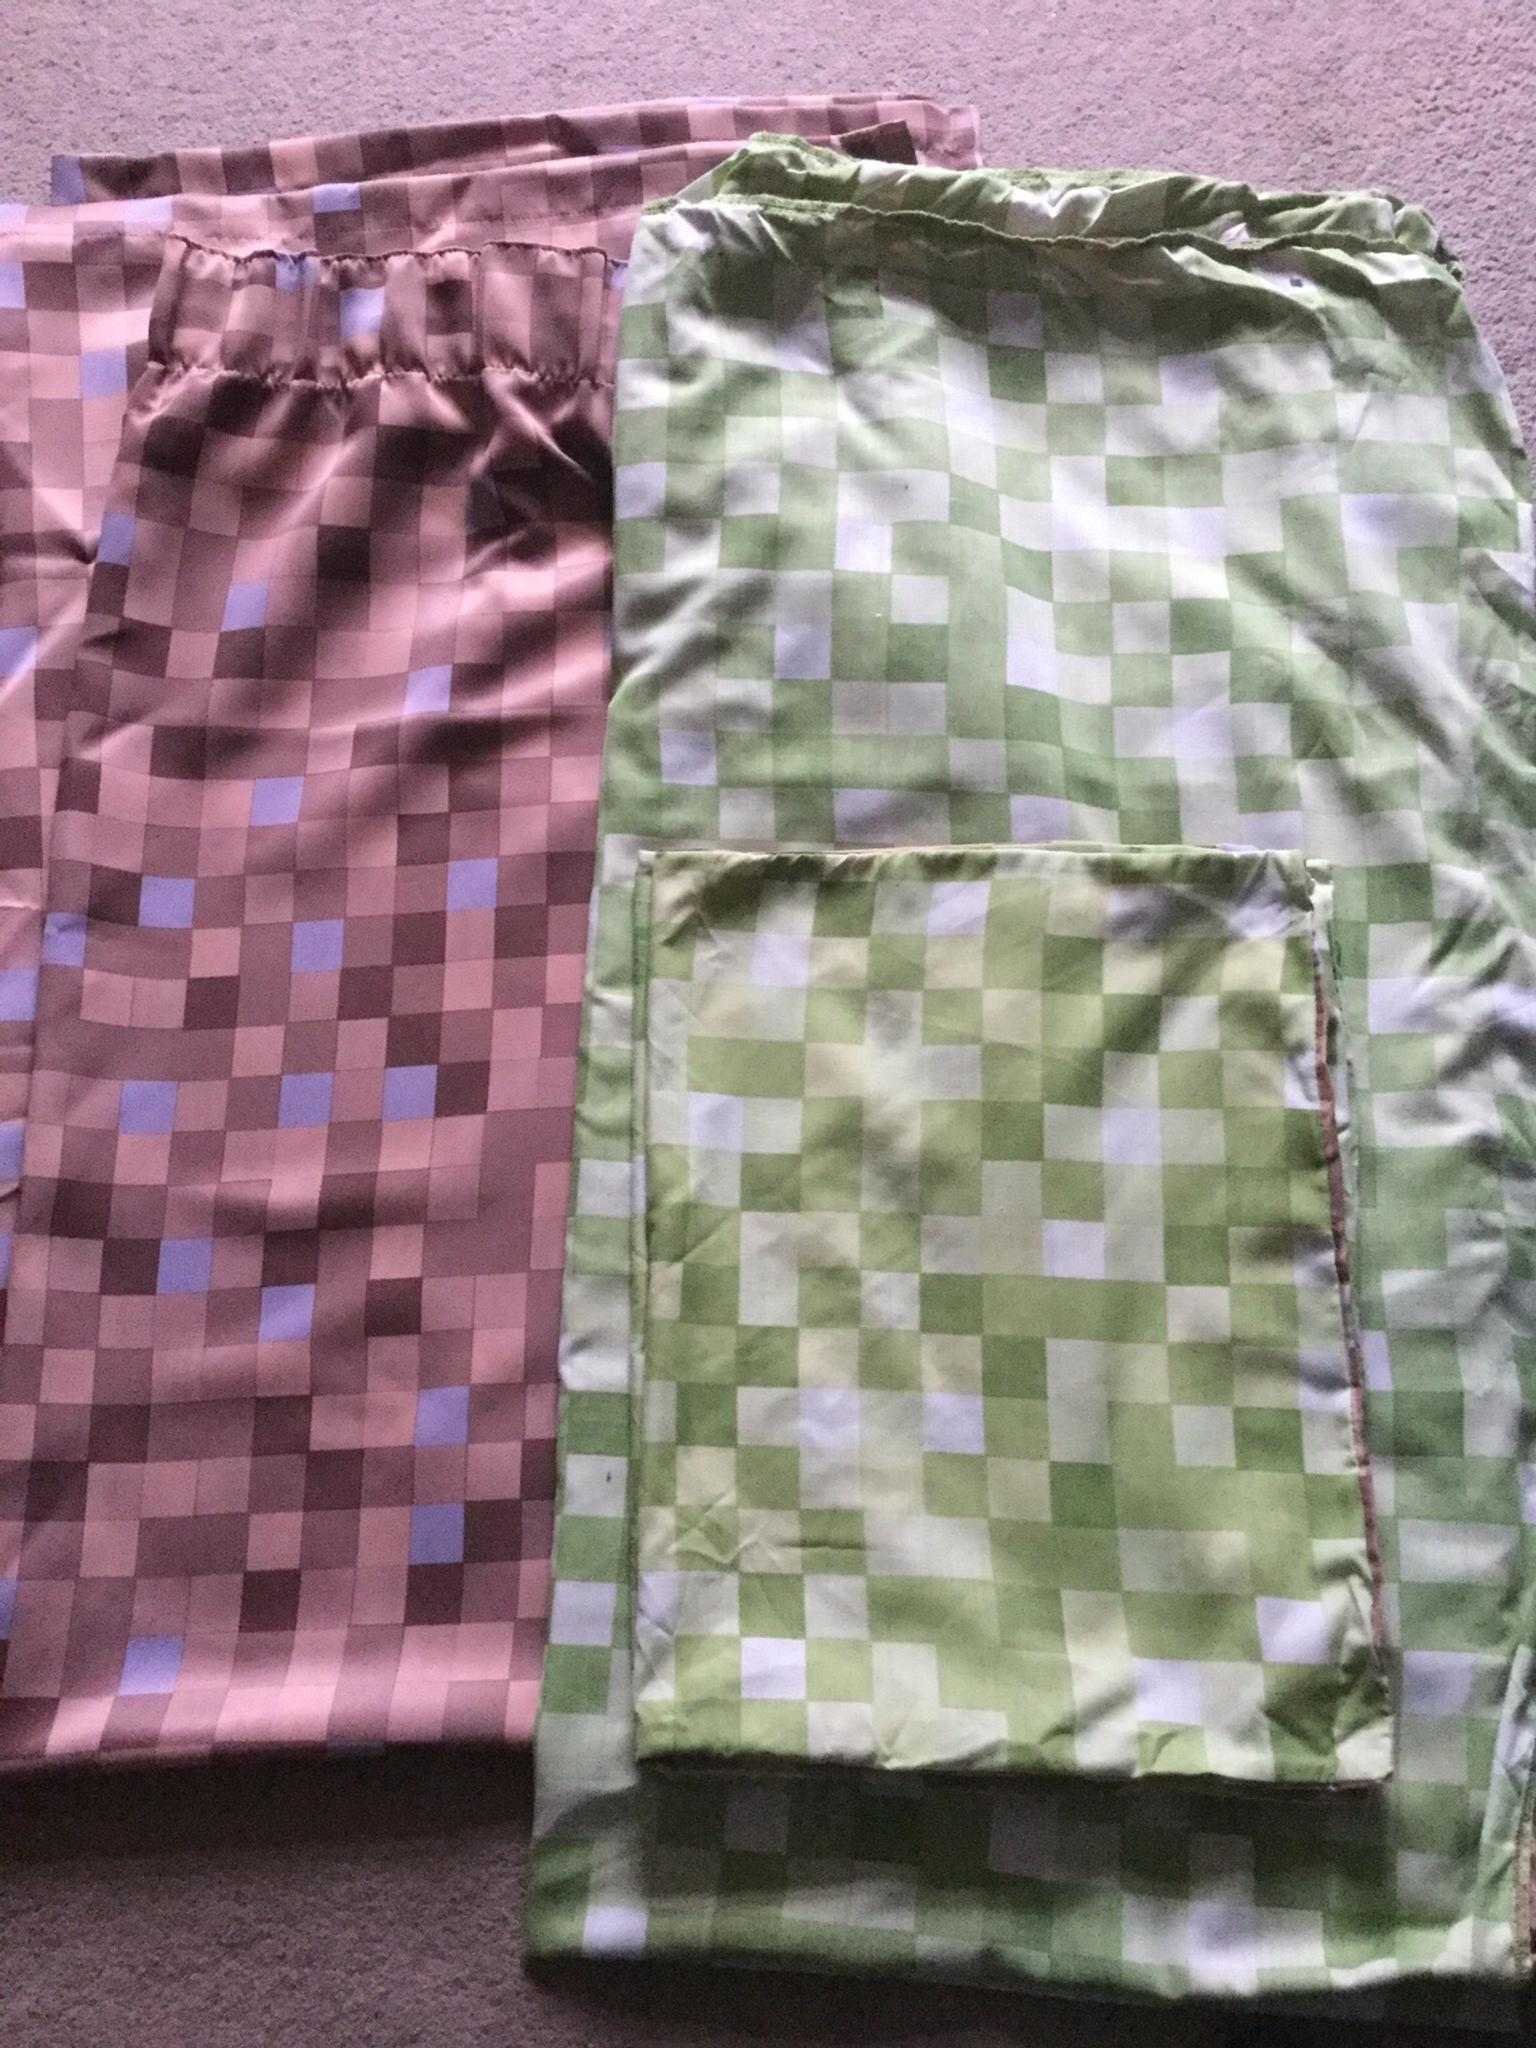 Minecraft Curtains And Bedding Set In Stirling Fur 15 00 Zum